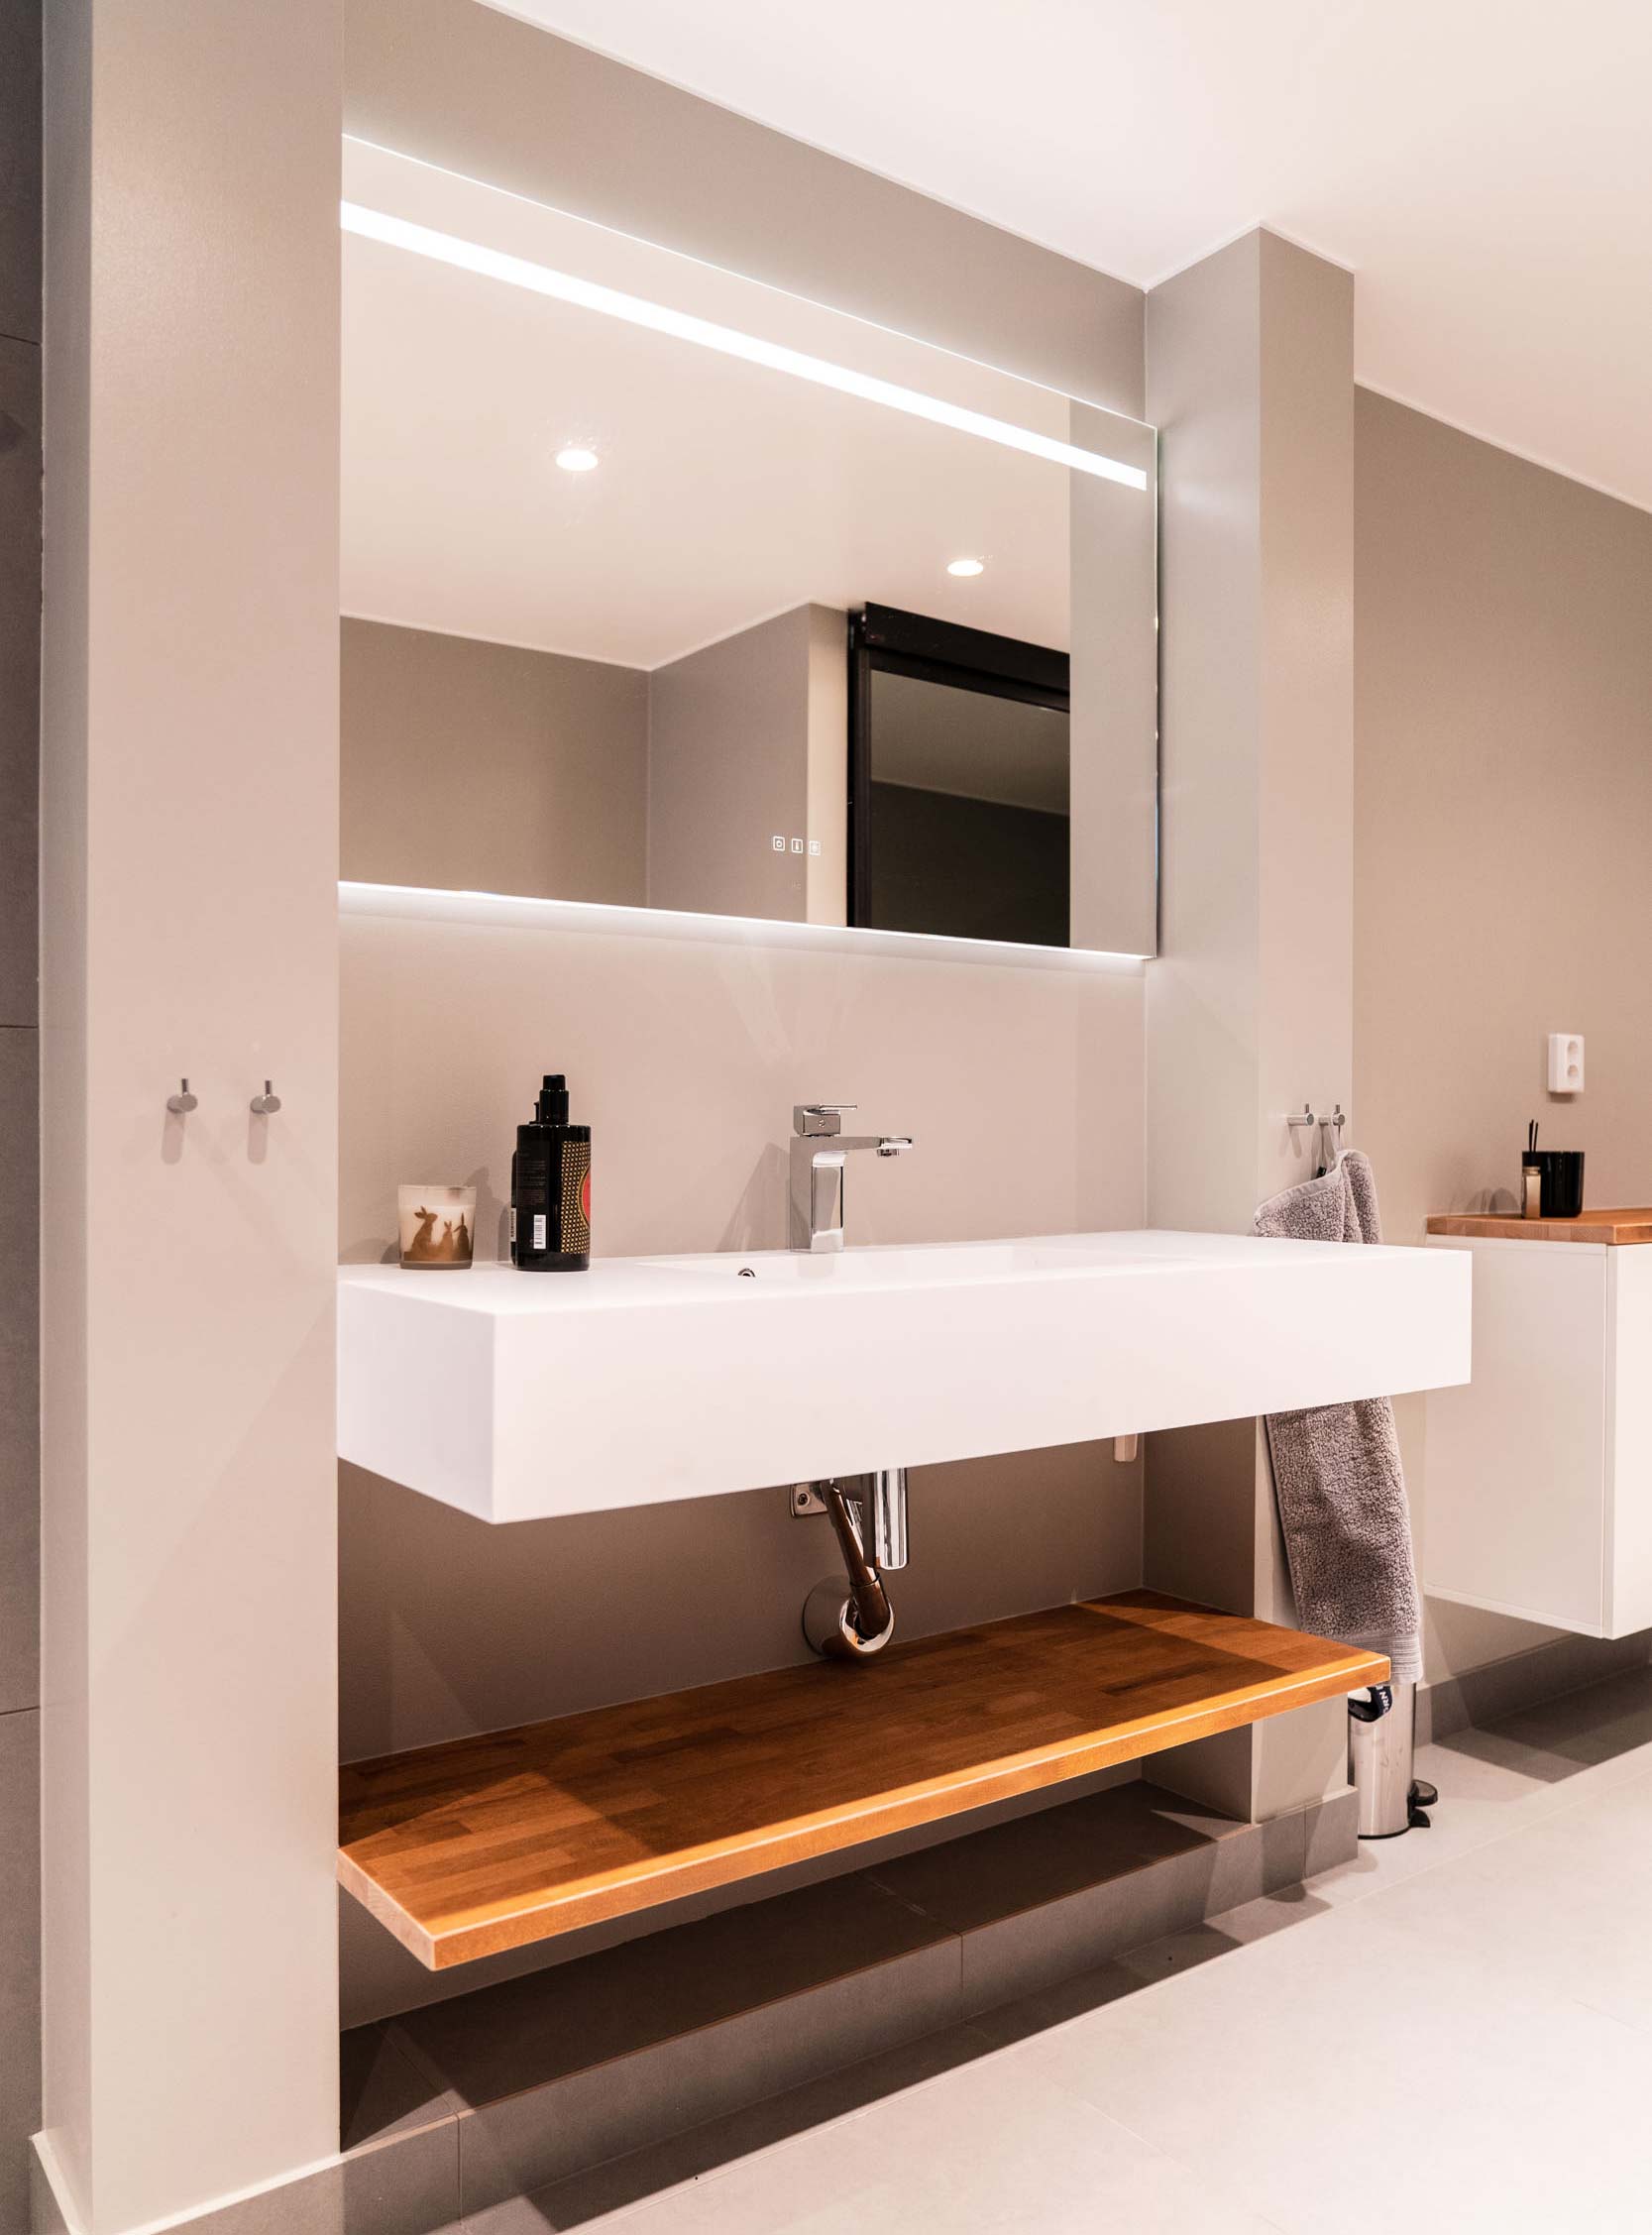 Lyxigt badrum med vitt fyrkantigt stort handfat, lyxig belysning, beiga väggar och detaljer av trä